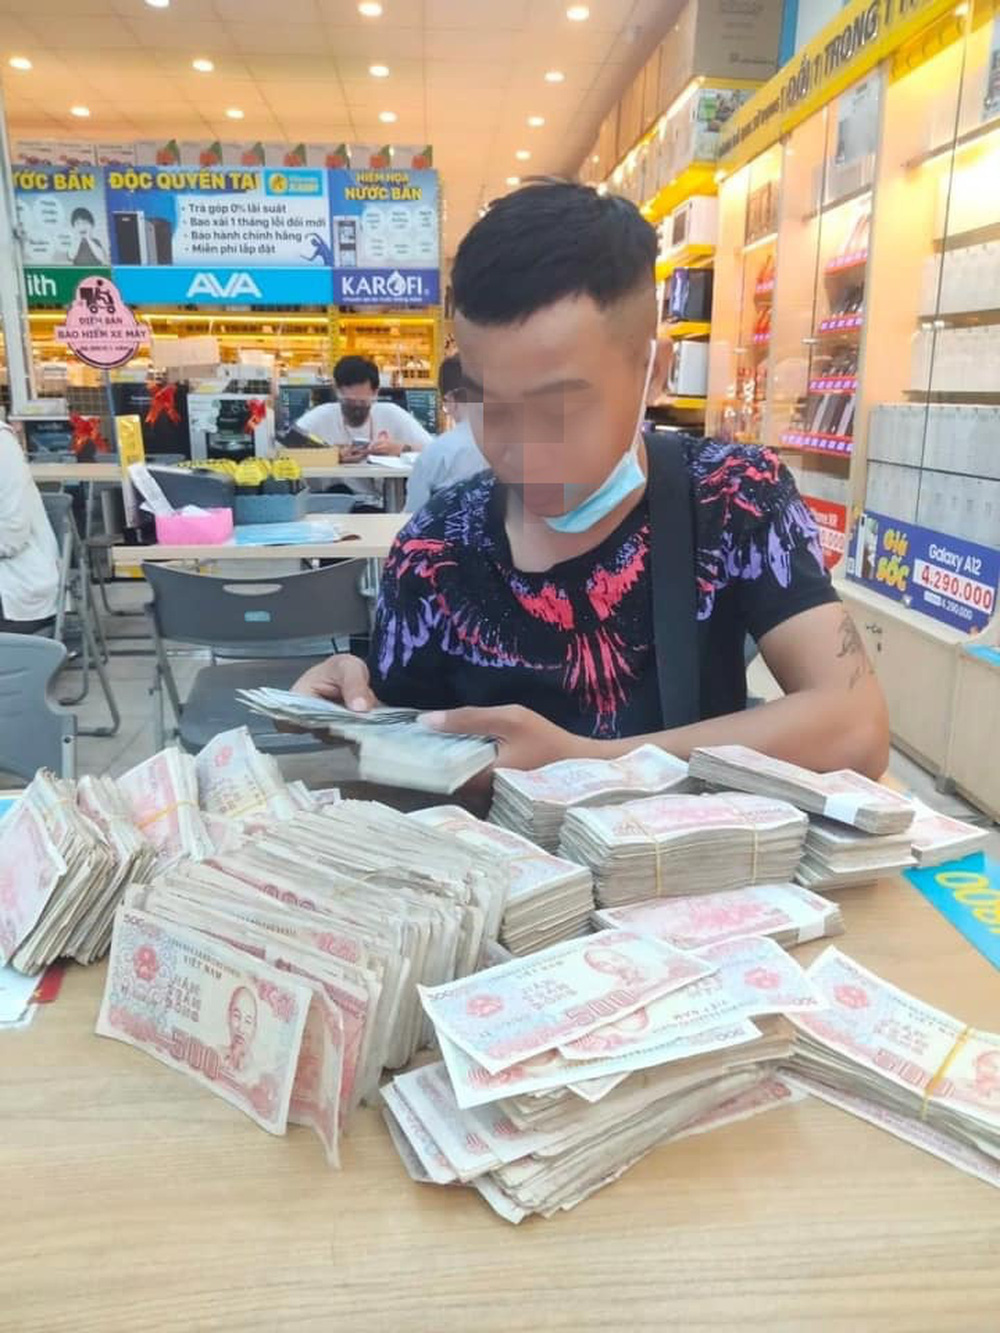 Cặp đôi tiền 500 đồng là một trong những hình ảnh kinh điển của Việt Nam được in trên tờ tiền. Hình ảnh đó ghi lại trong tâm trí người Việt Nam với tình cảm tuyệt vời và thủy chung. Nếu bạn muốn biết thêm về cặp đôi này và tình yêu của họ, hãy xem hình ảnh trên từng tờ tiền.